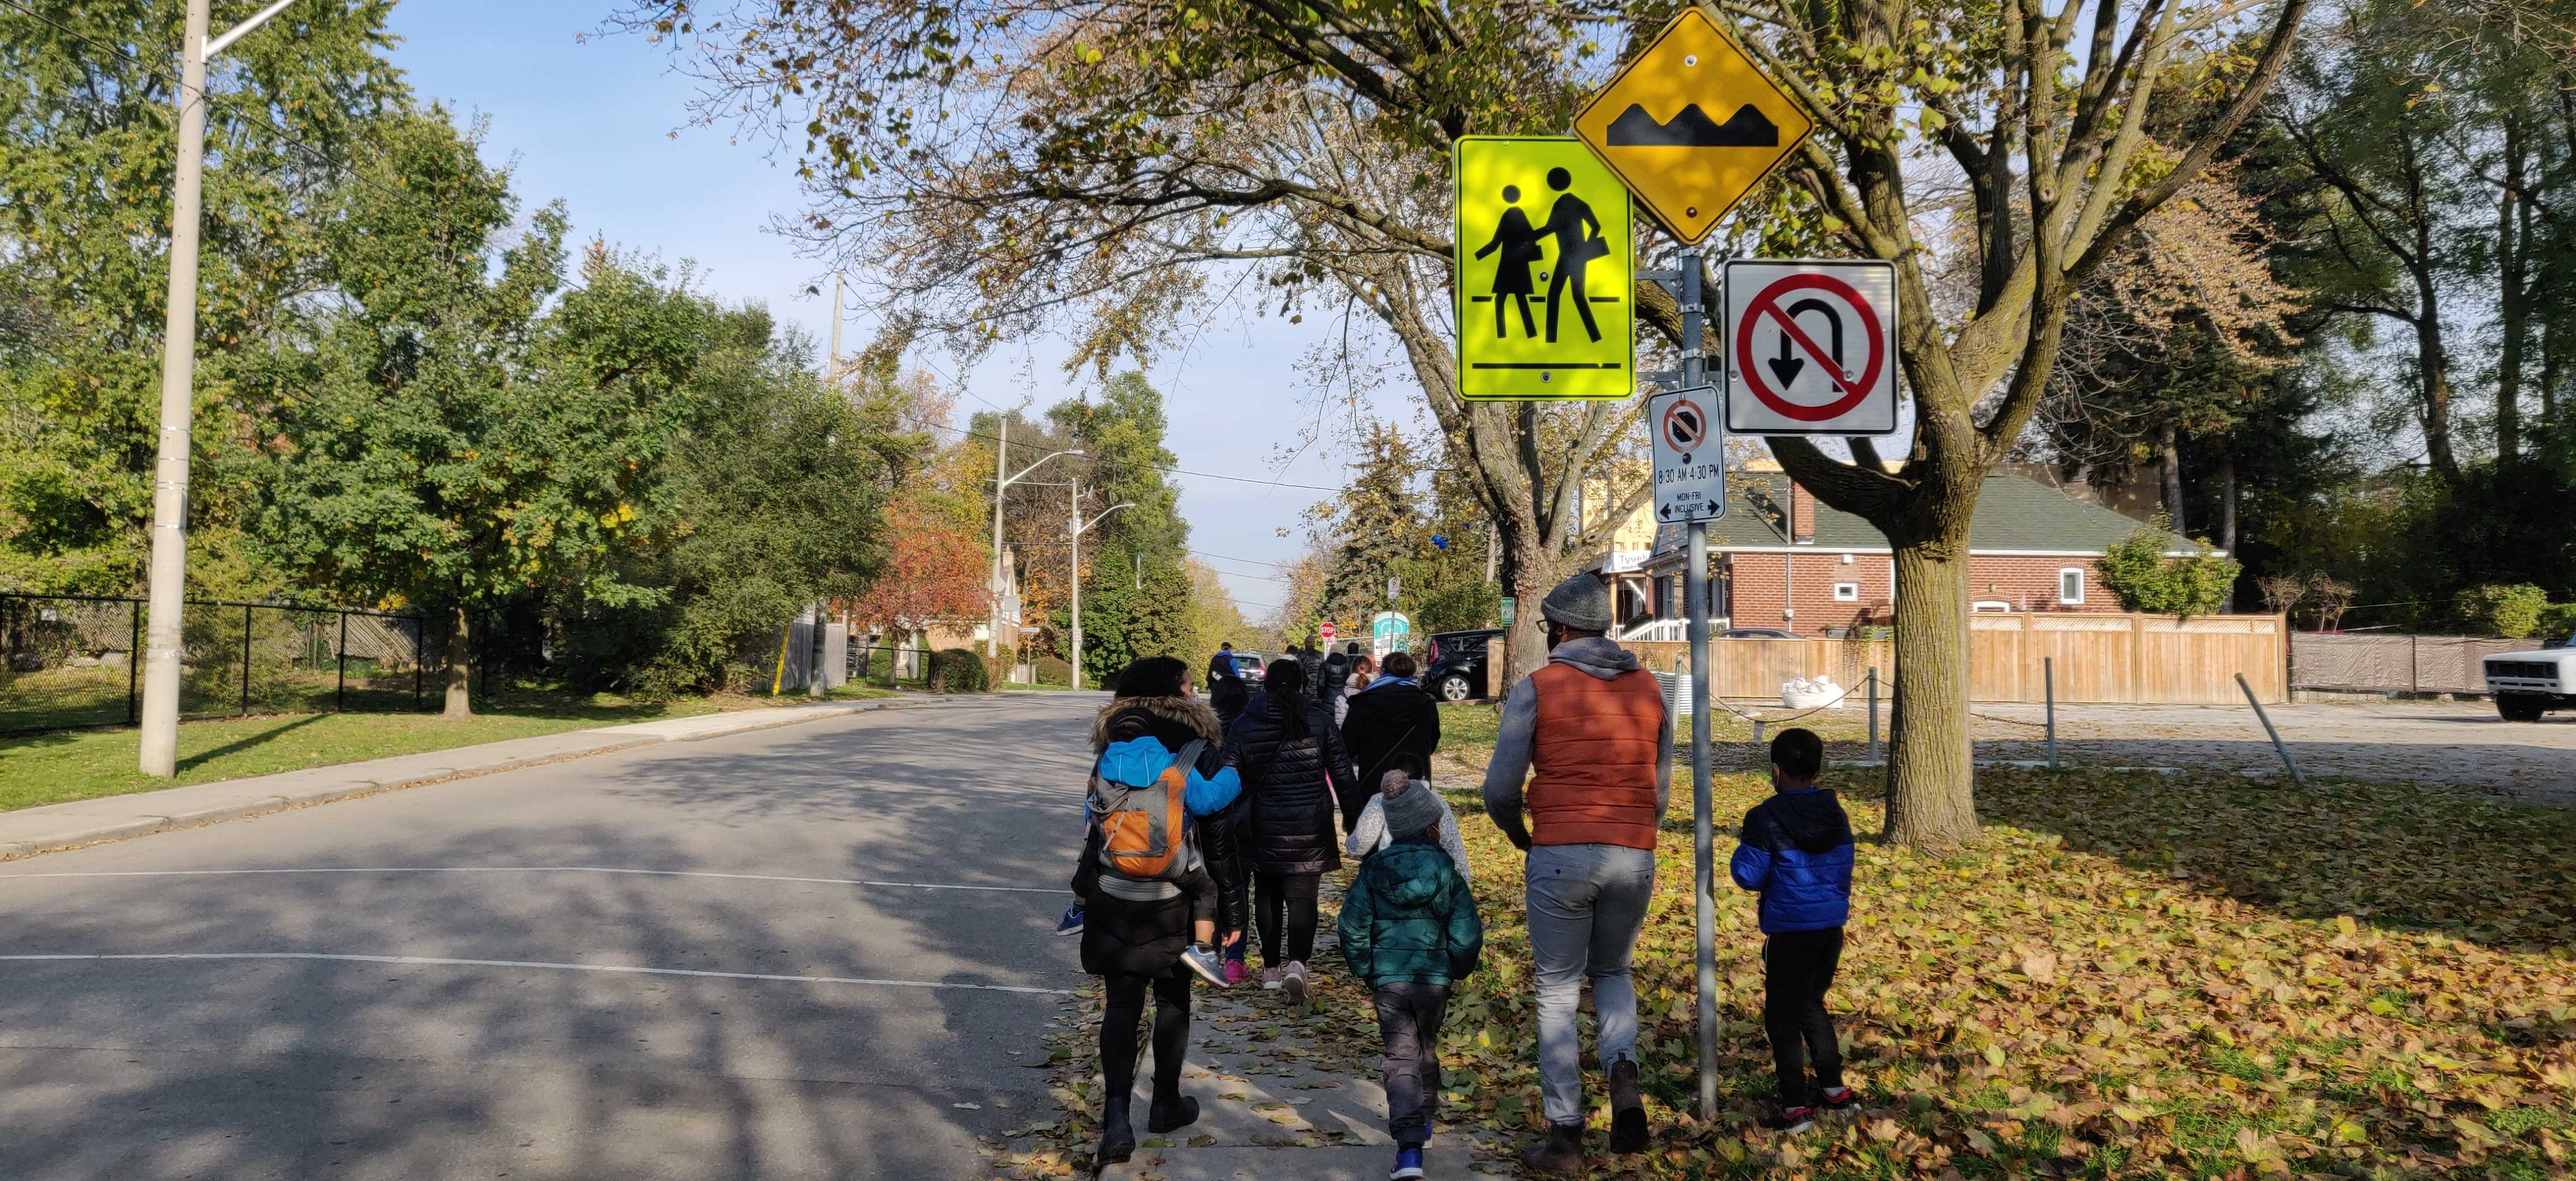 Kids walking to school